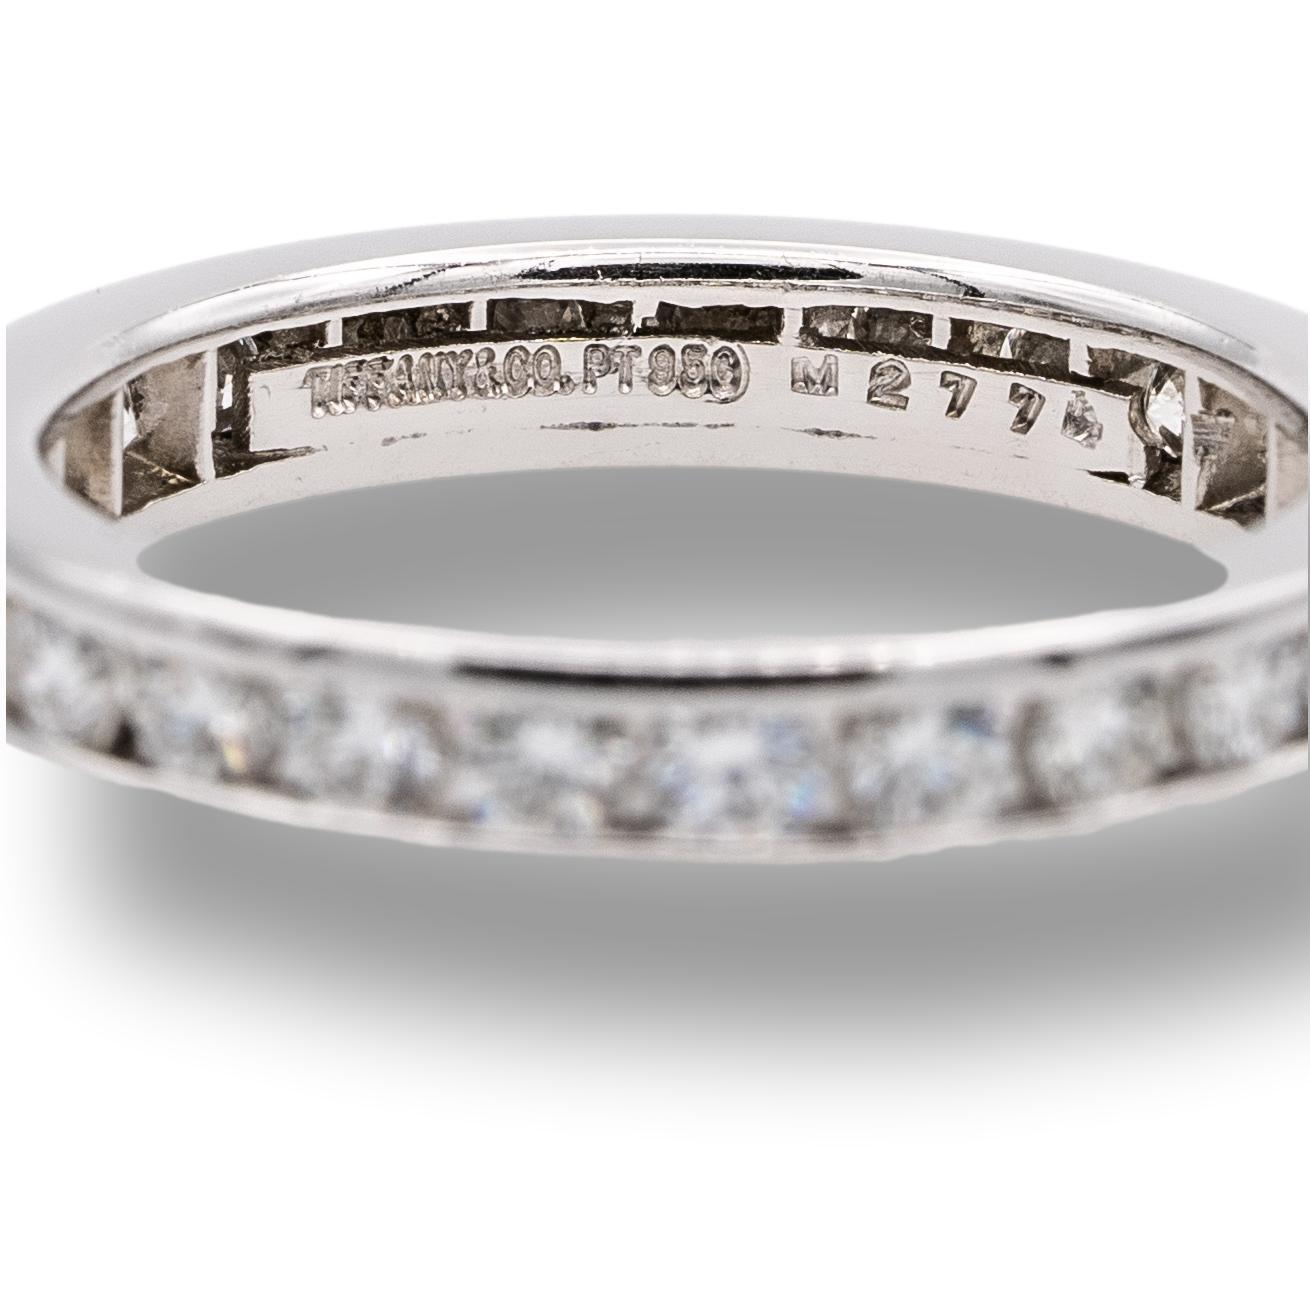 Alliance Tiffany & Co. finement réalisée en platine avec 25 diamants ronds de taille brillant pesant 0,93 carats, poids total approximatif, sertis tout autour dans un canal. L'anneau a une largeur de 3 mm. 

Marque : Tiffany & Co.

Poinçons :